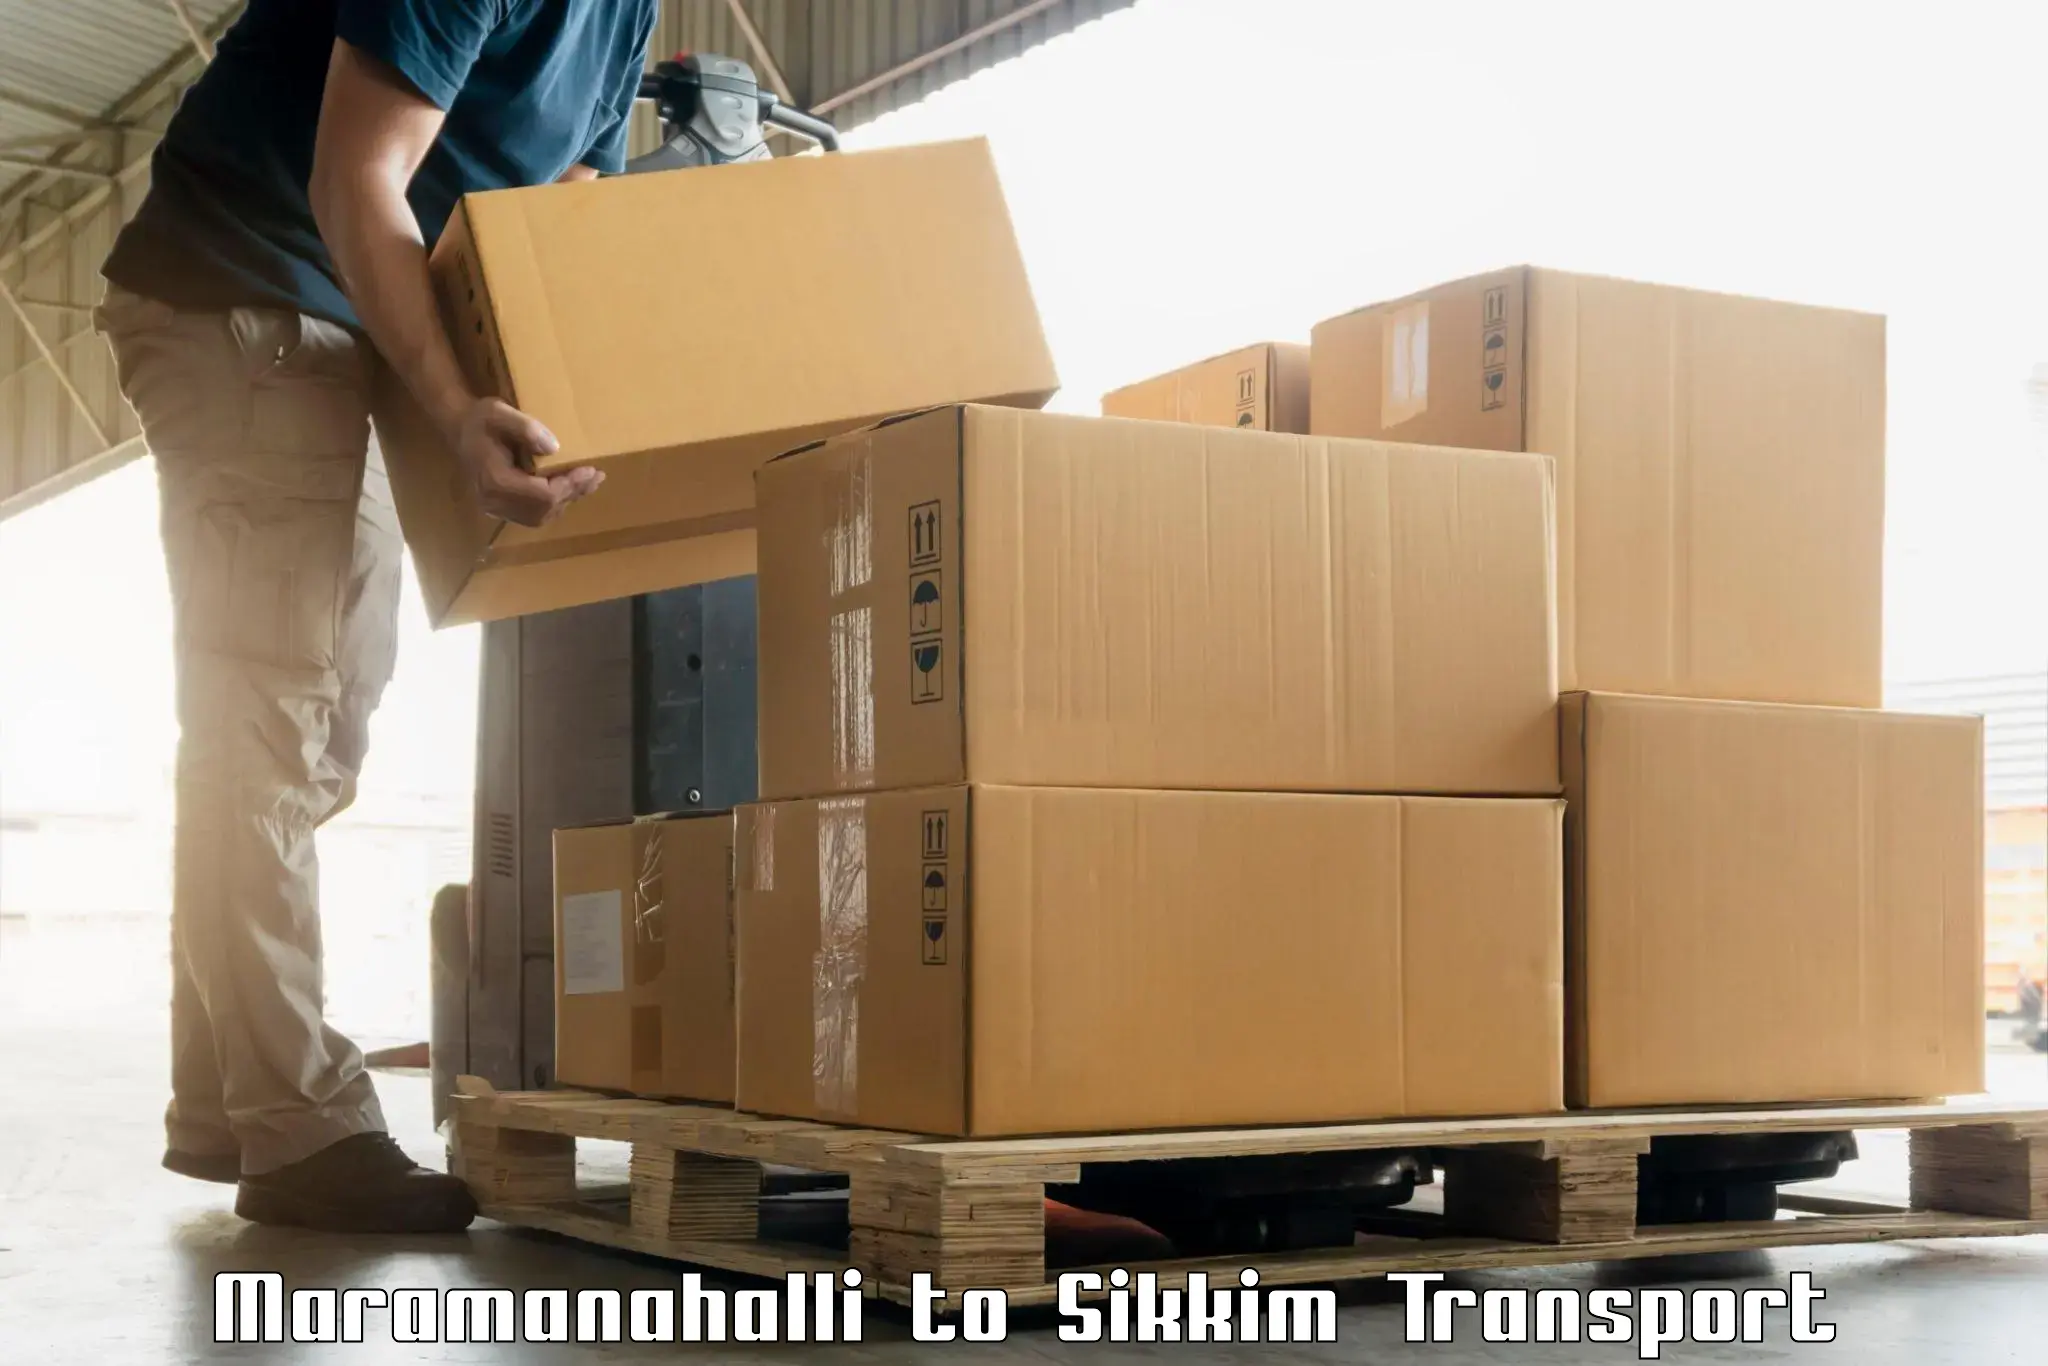 Shipping partner Maramanahalli to Mangan